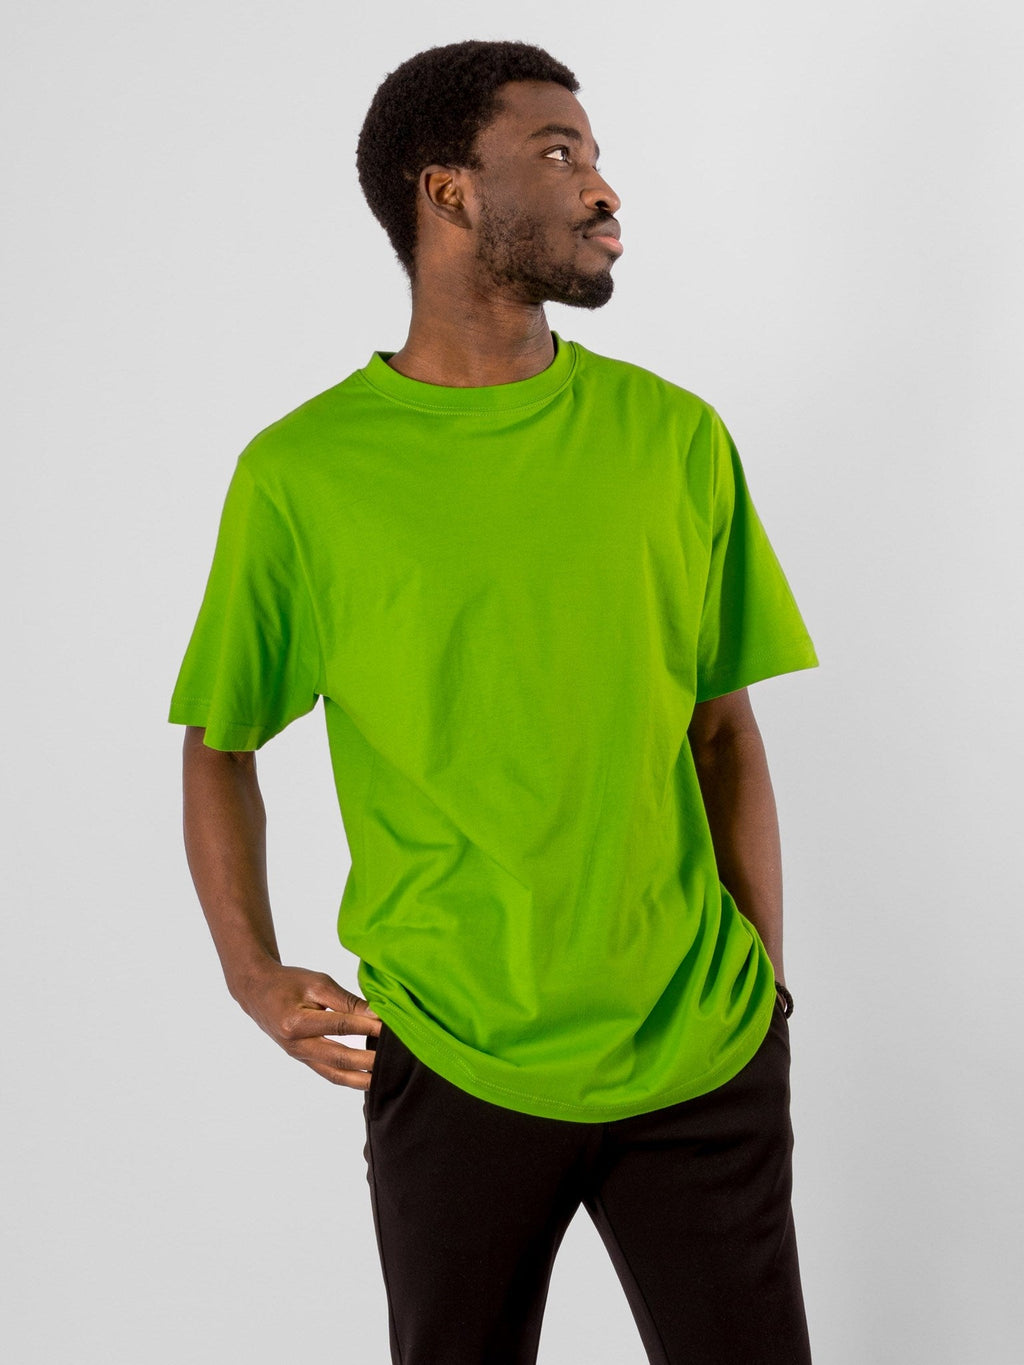 Υπερμεγέθη μπλουζάκι - ασβέστη πράσινο